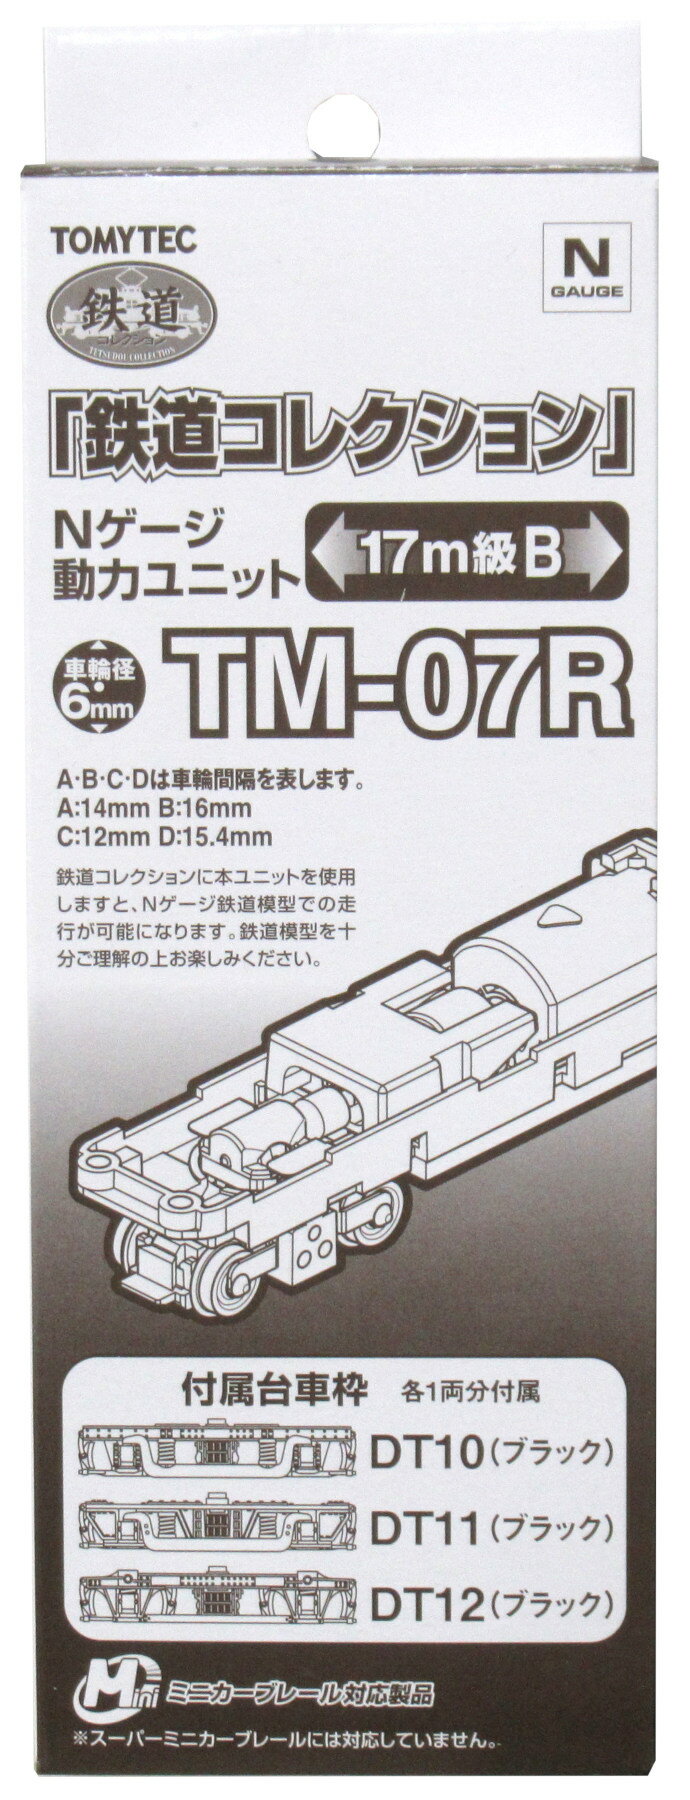 【中古】ジオコレ TOMYTEC(トミーテック) TM-07R 鉄道コレクション Nゲージ動力ユニット 17m級B 【A´】 外箱若干傷み/走行確認済み